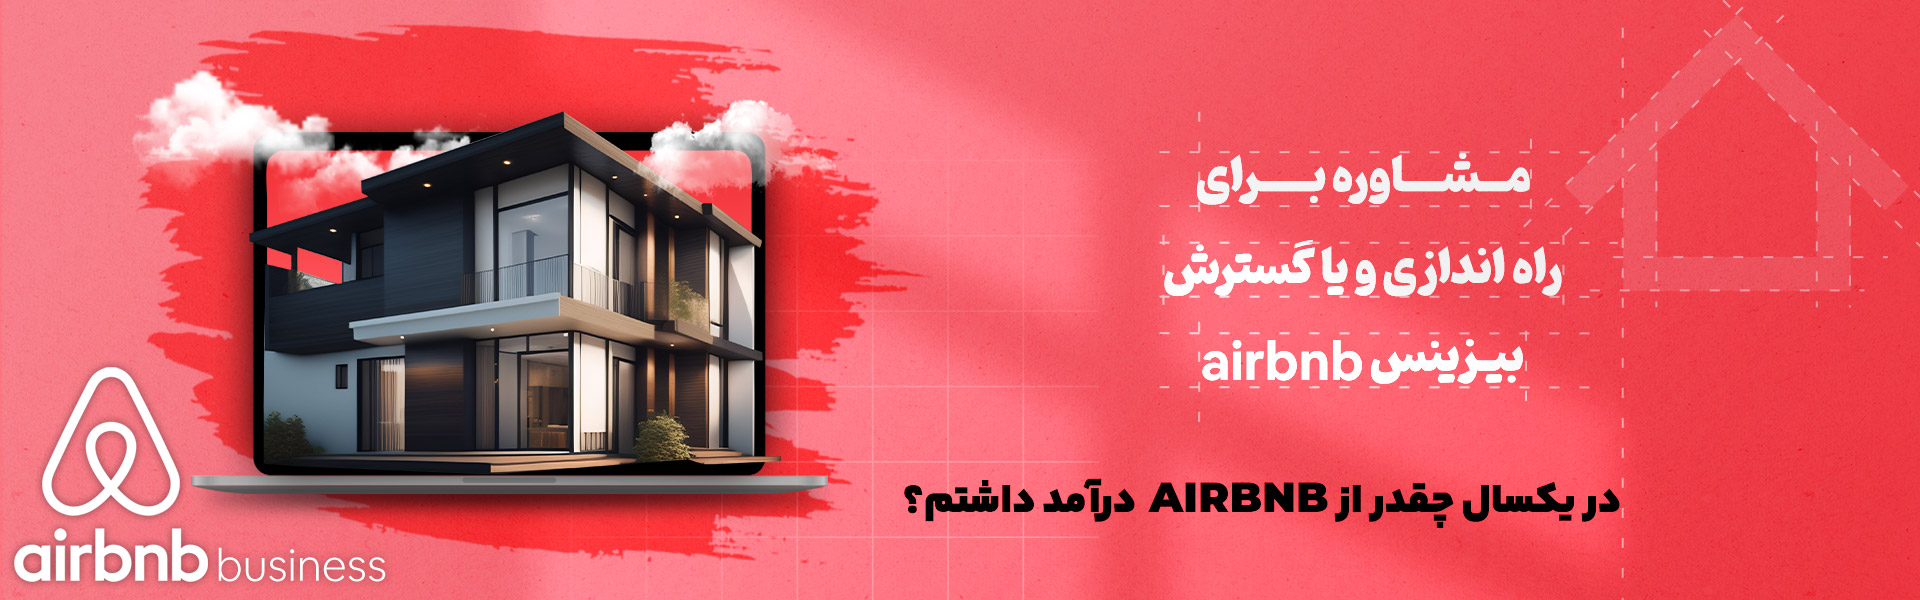 مشاوره کسب درآمد از وبسایت airbnb